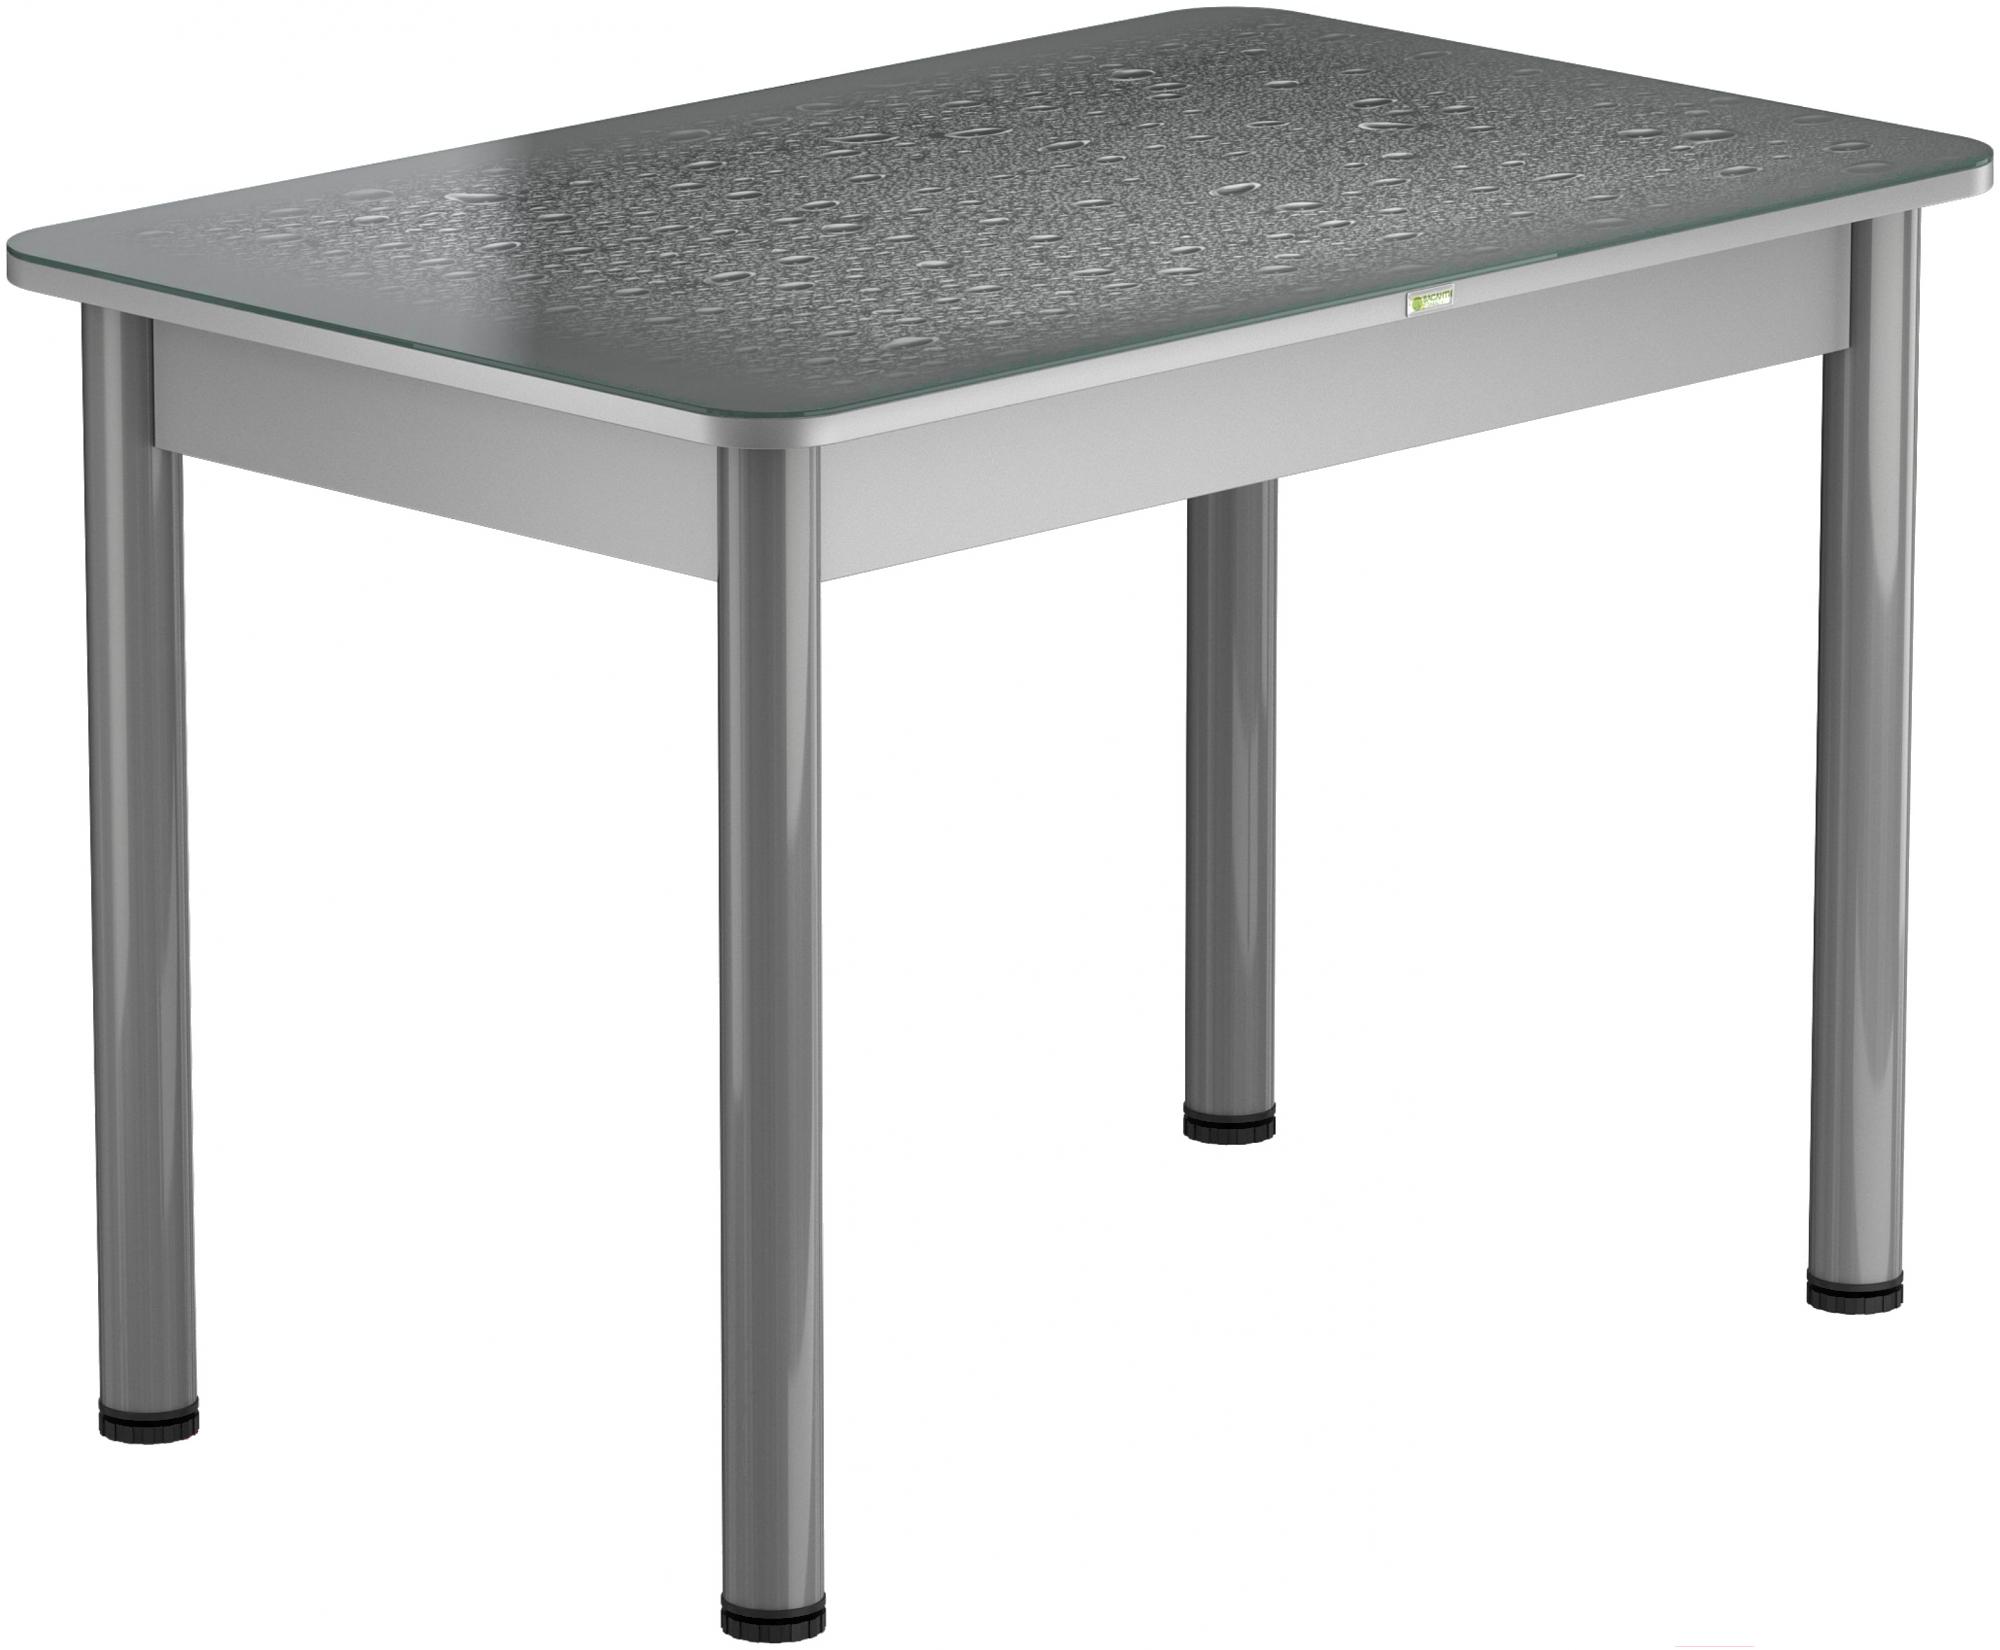 Обеденный стол Solt 110x70